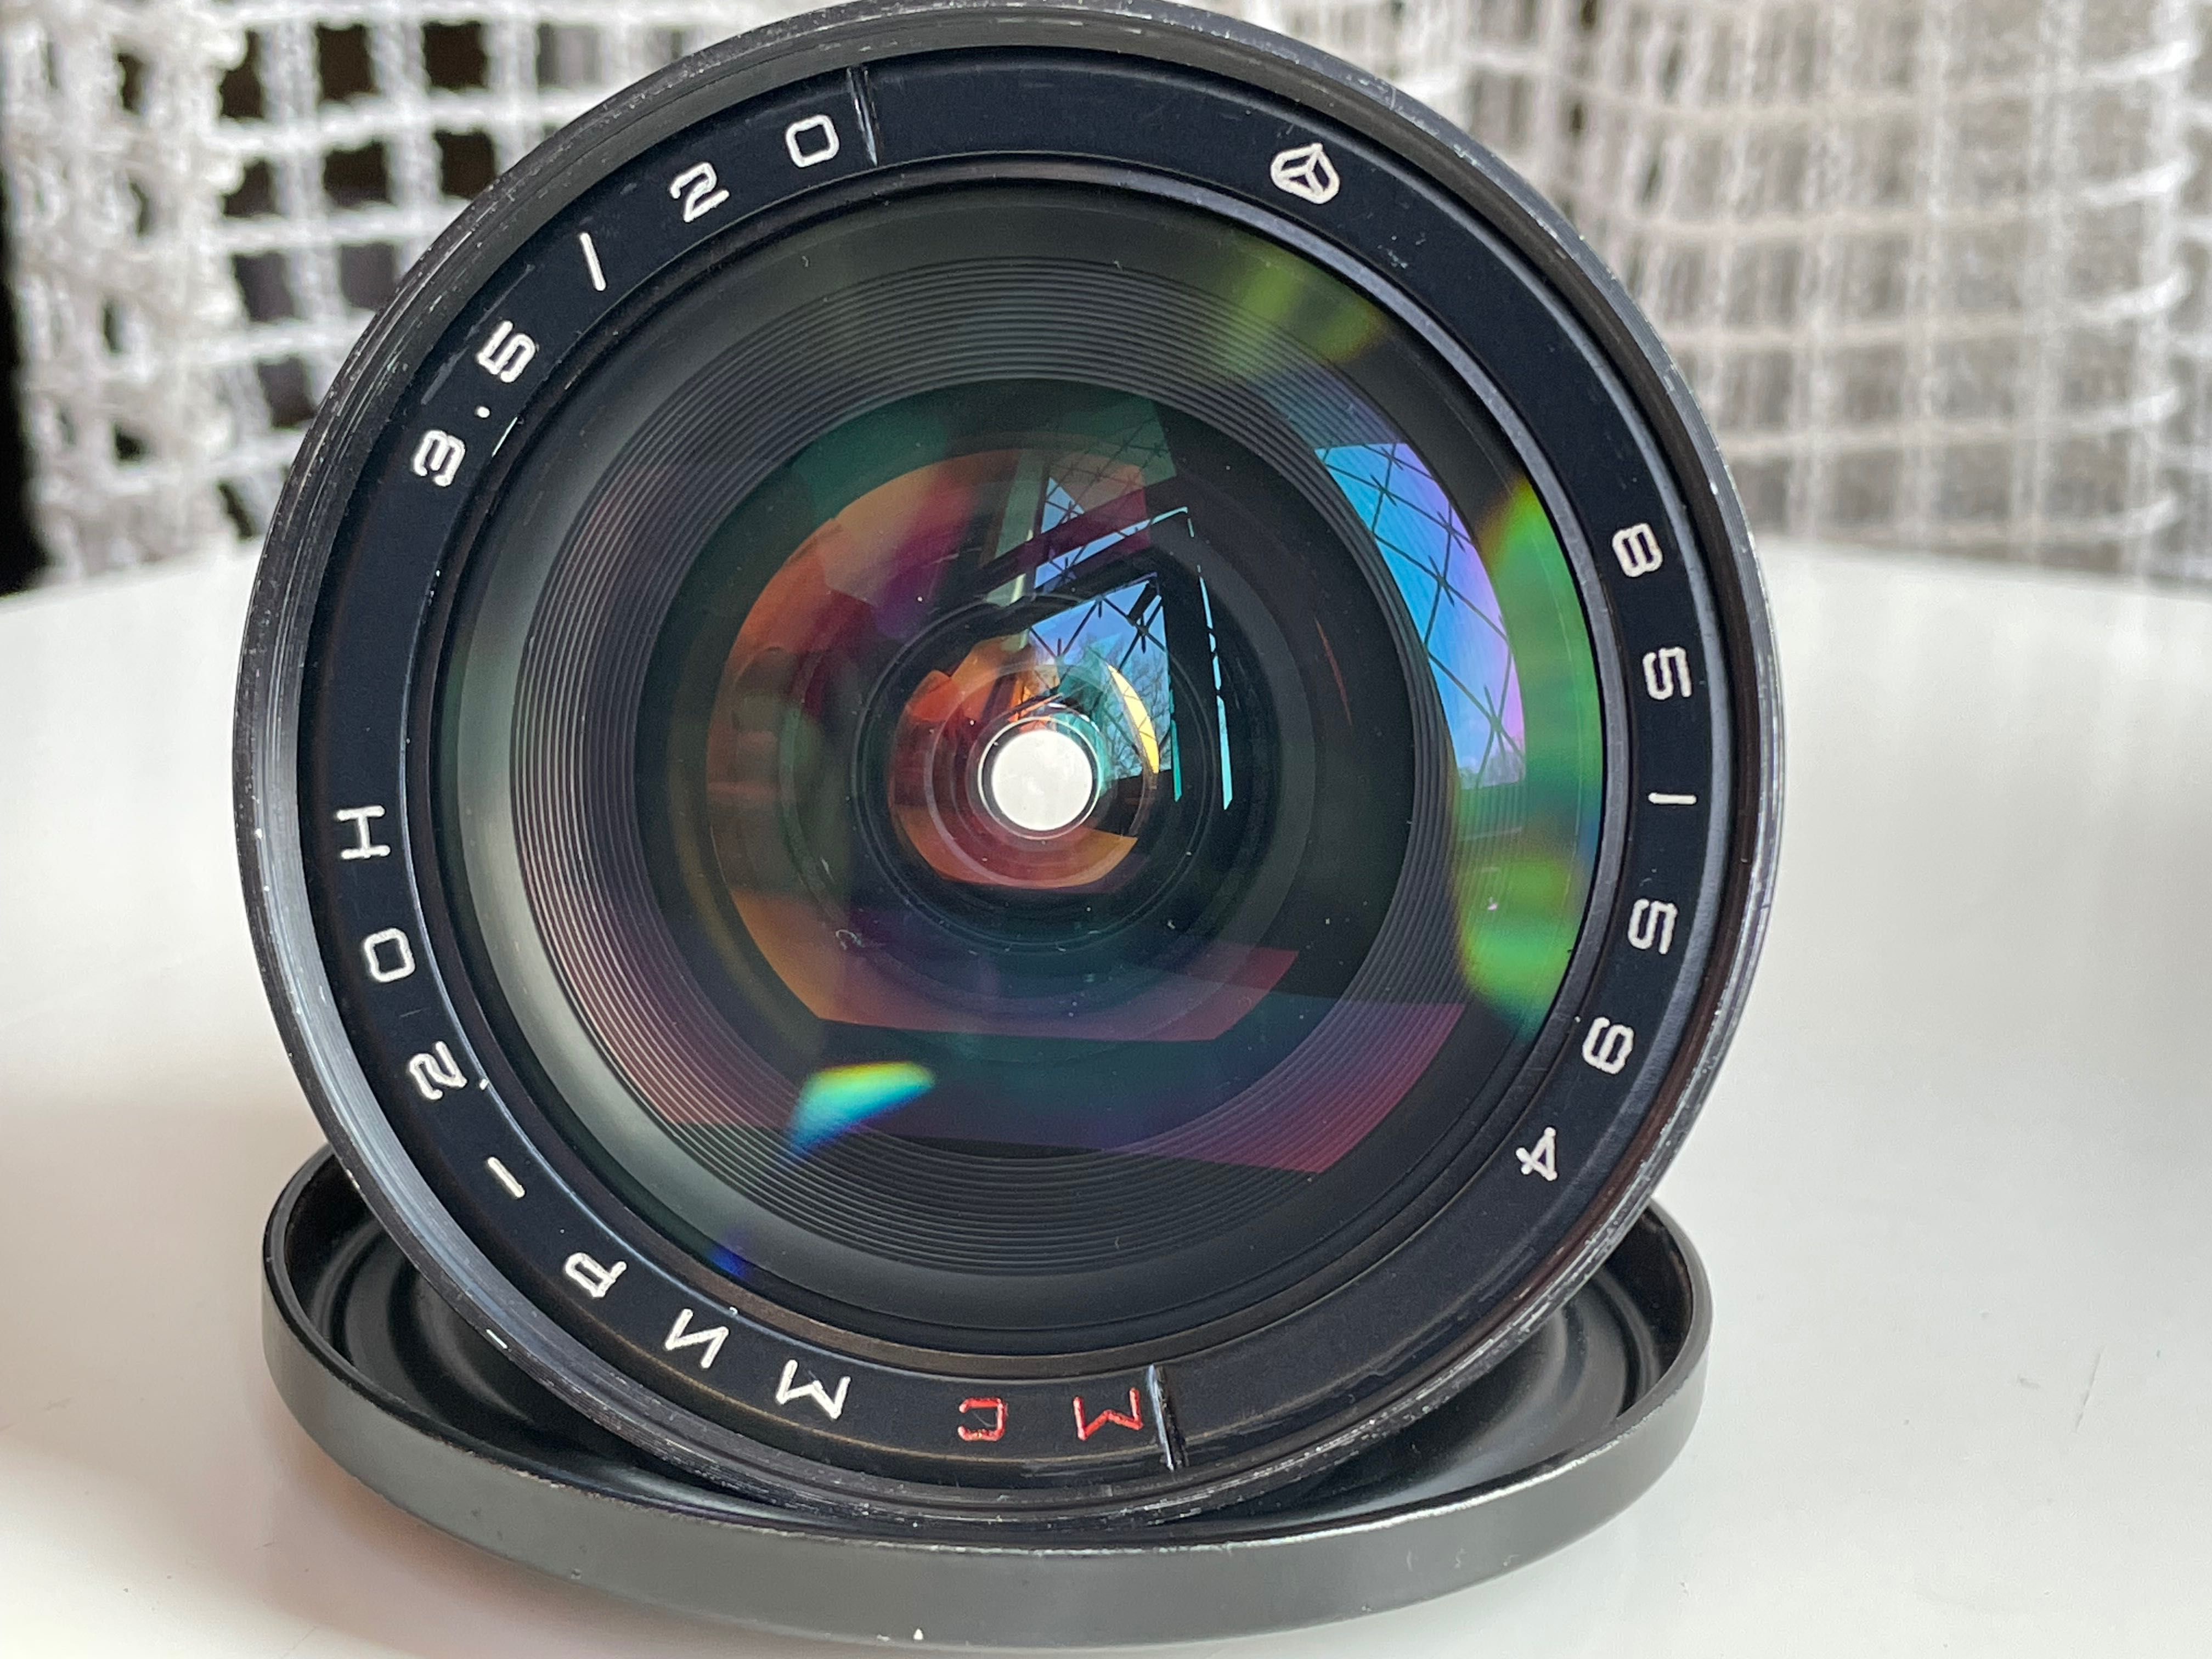 Radziecki obiektyw MS MIR-3.5/20 bagnet Nikon F